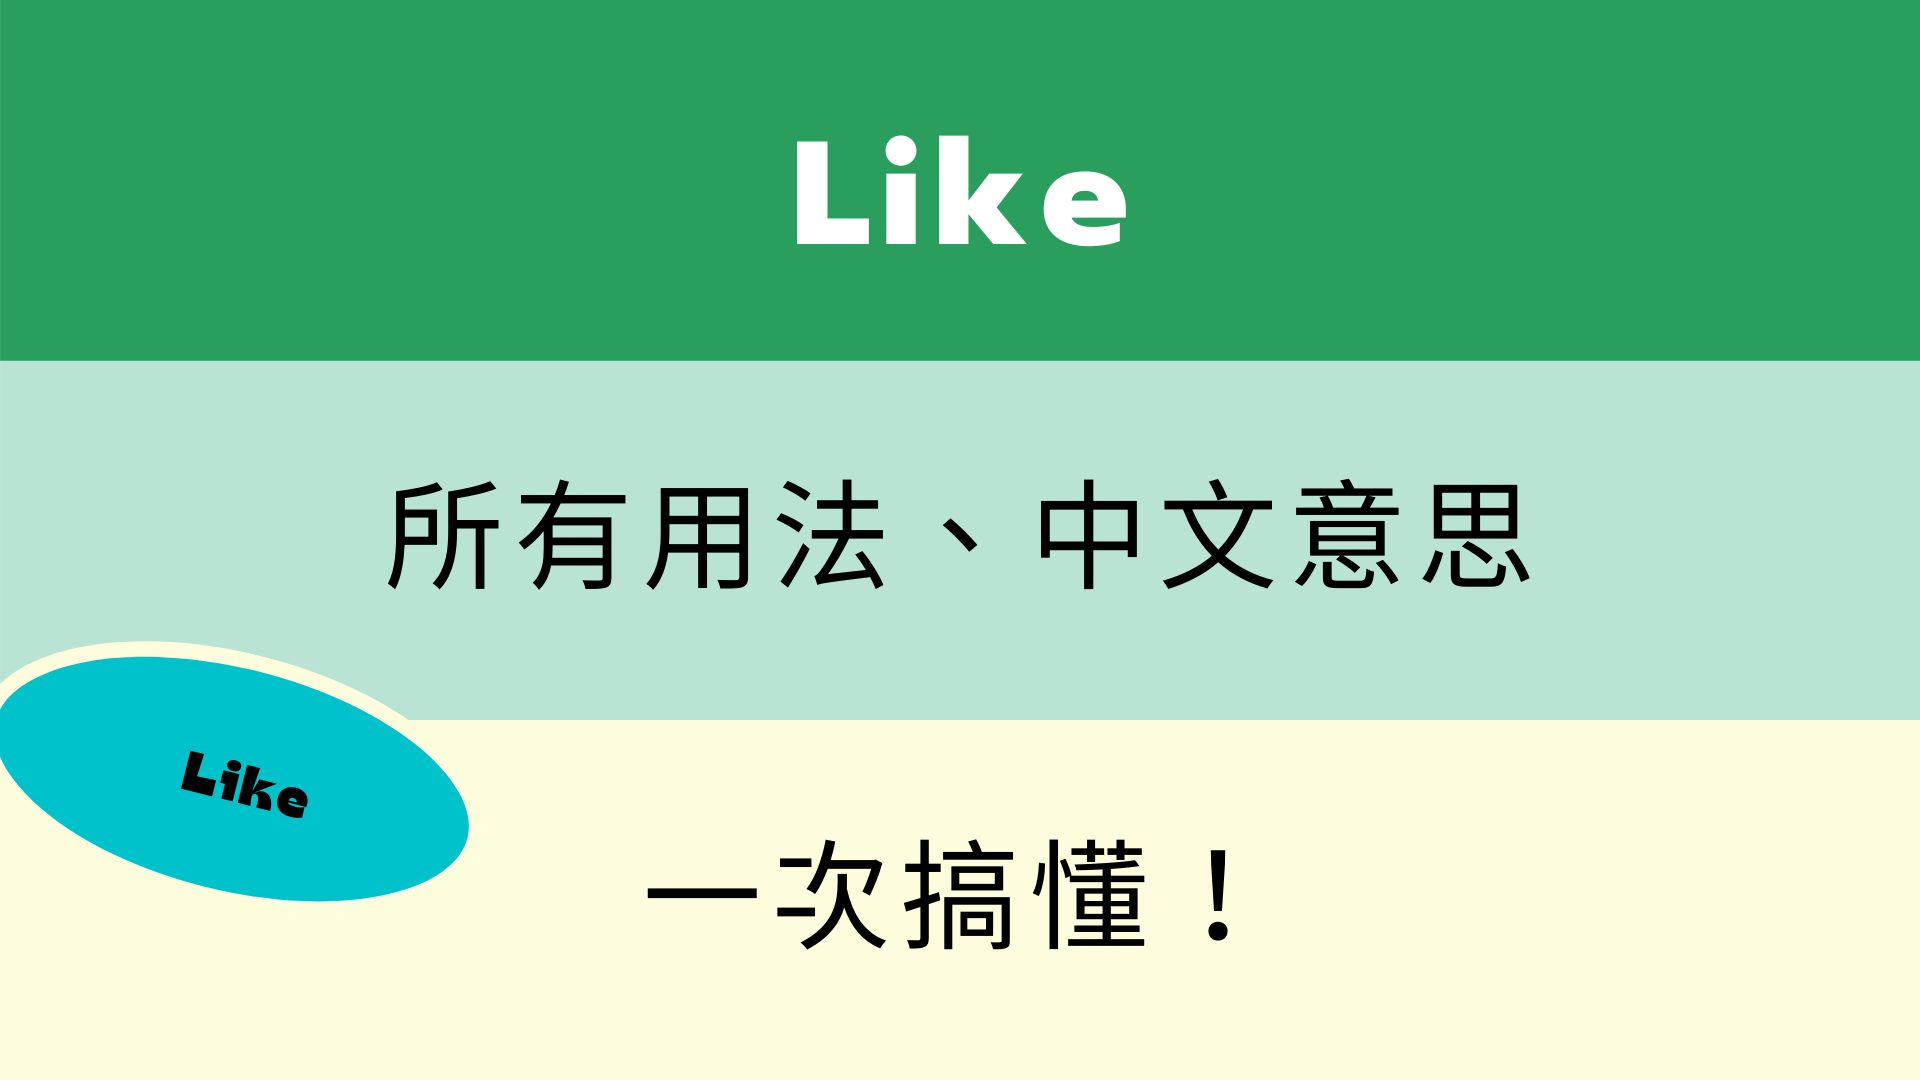 英文like 各種用法與中文意思 看例句一次搞懂 全民學英文